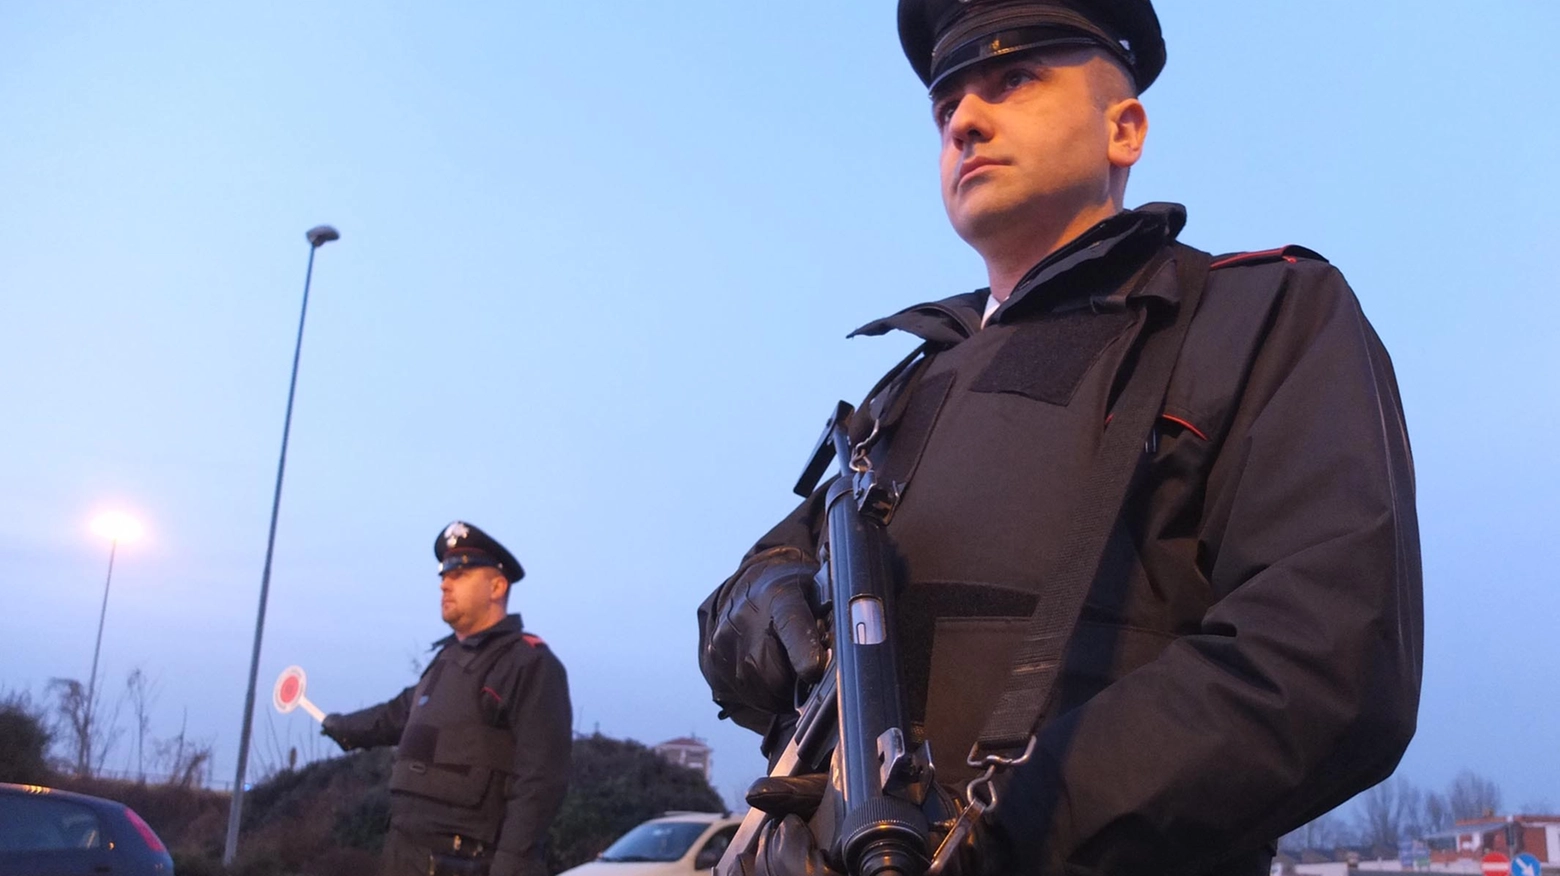 L'indagine dei carabinieri ha preso avvio nel gennaio 2019